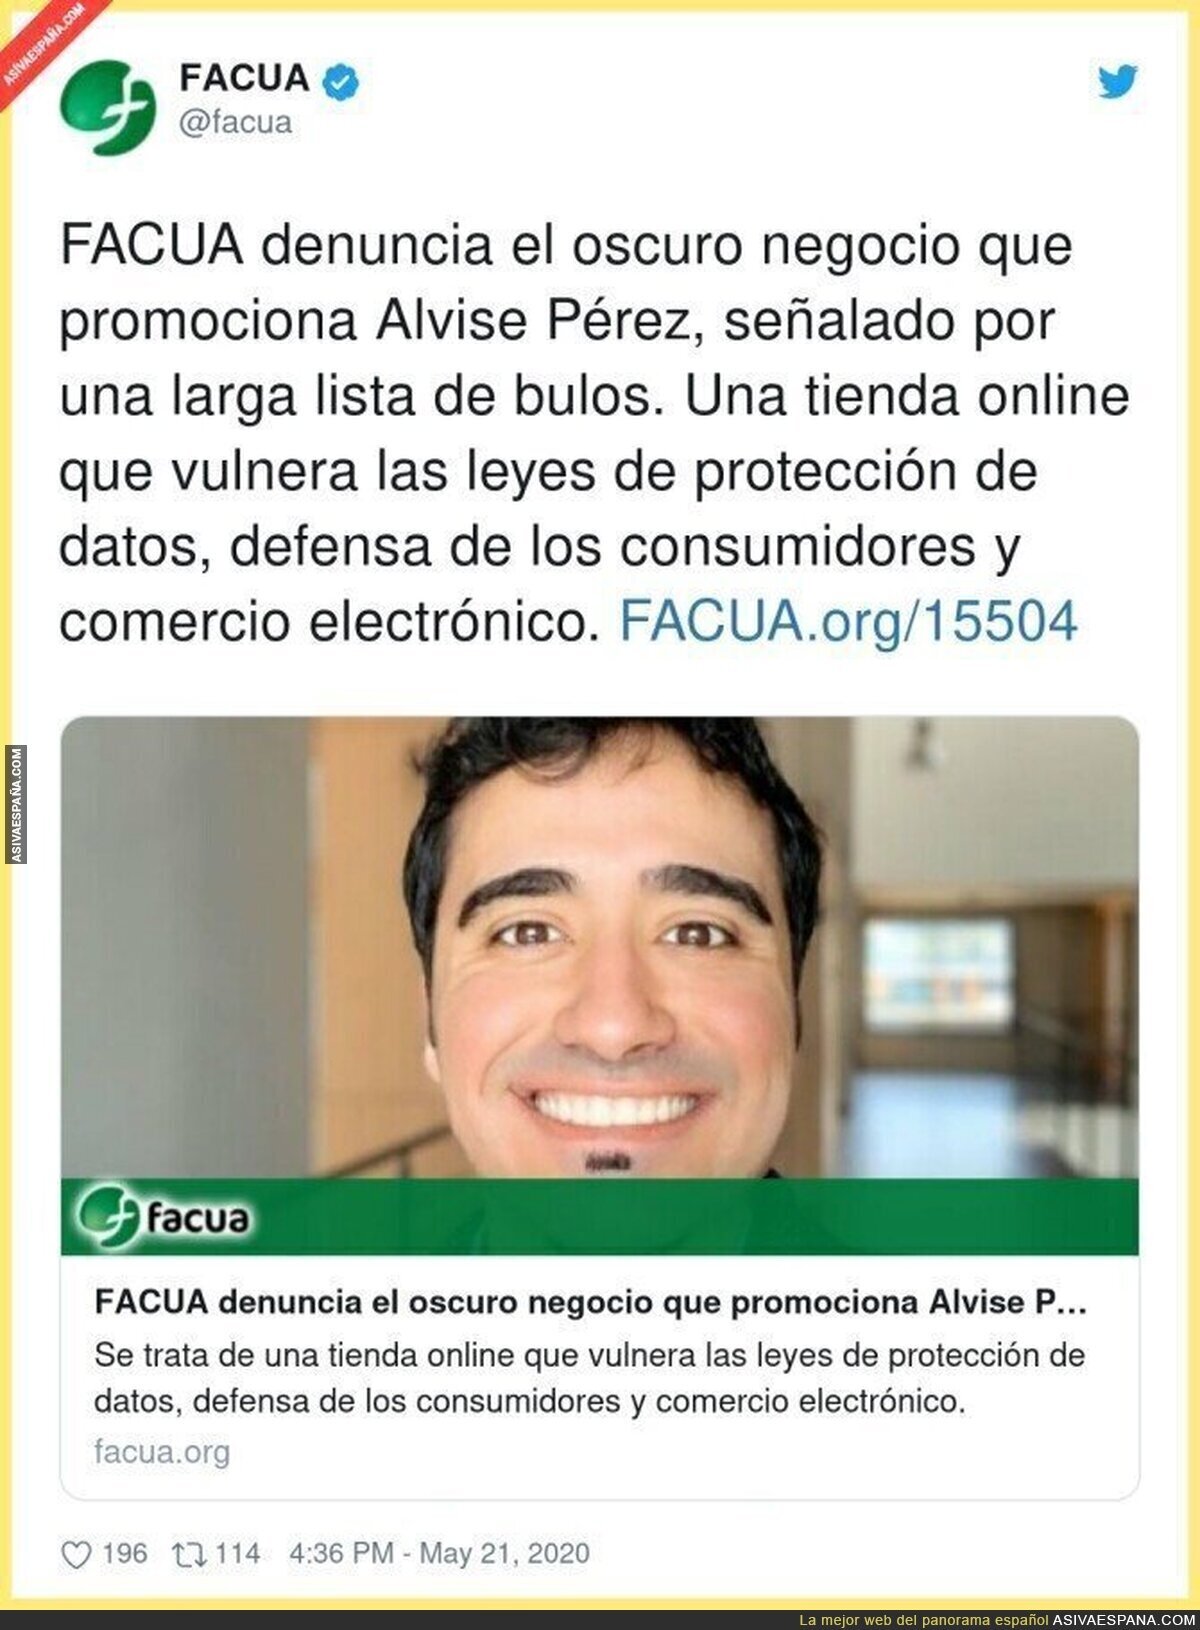 FACUA pasa al ataque contra Alvise Pérez